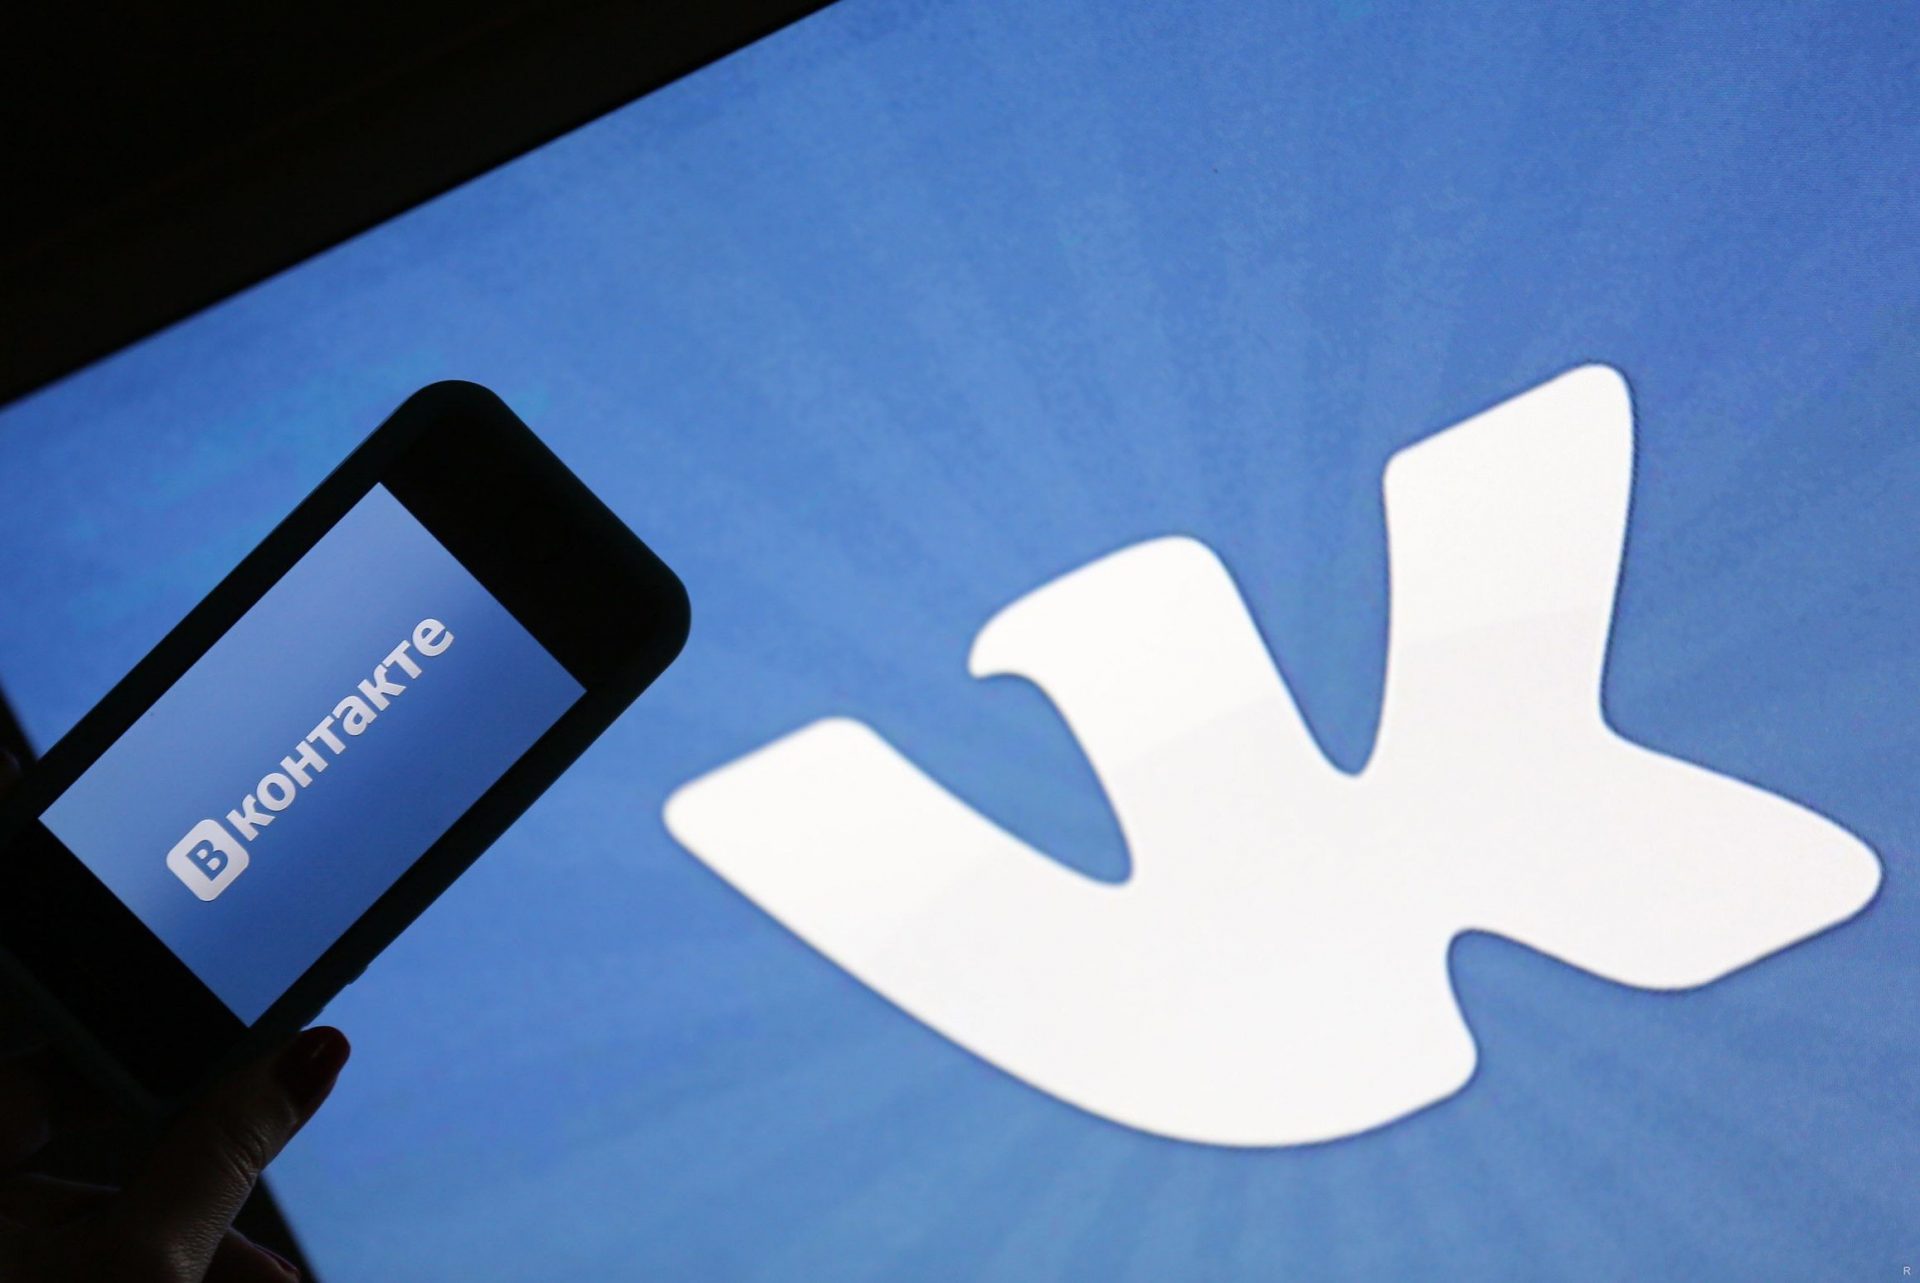 Compania rusă Gazprom a preluat controlul celei mai mari rețele de socializare din țară, VKontakte